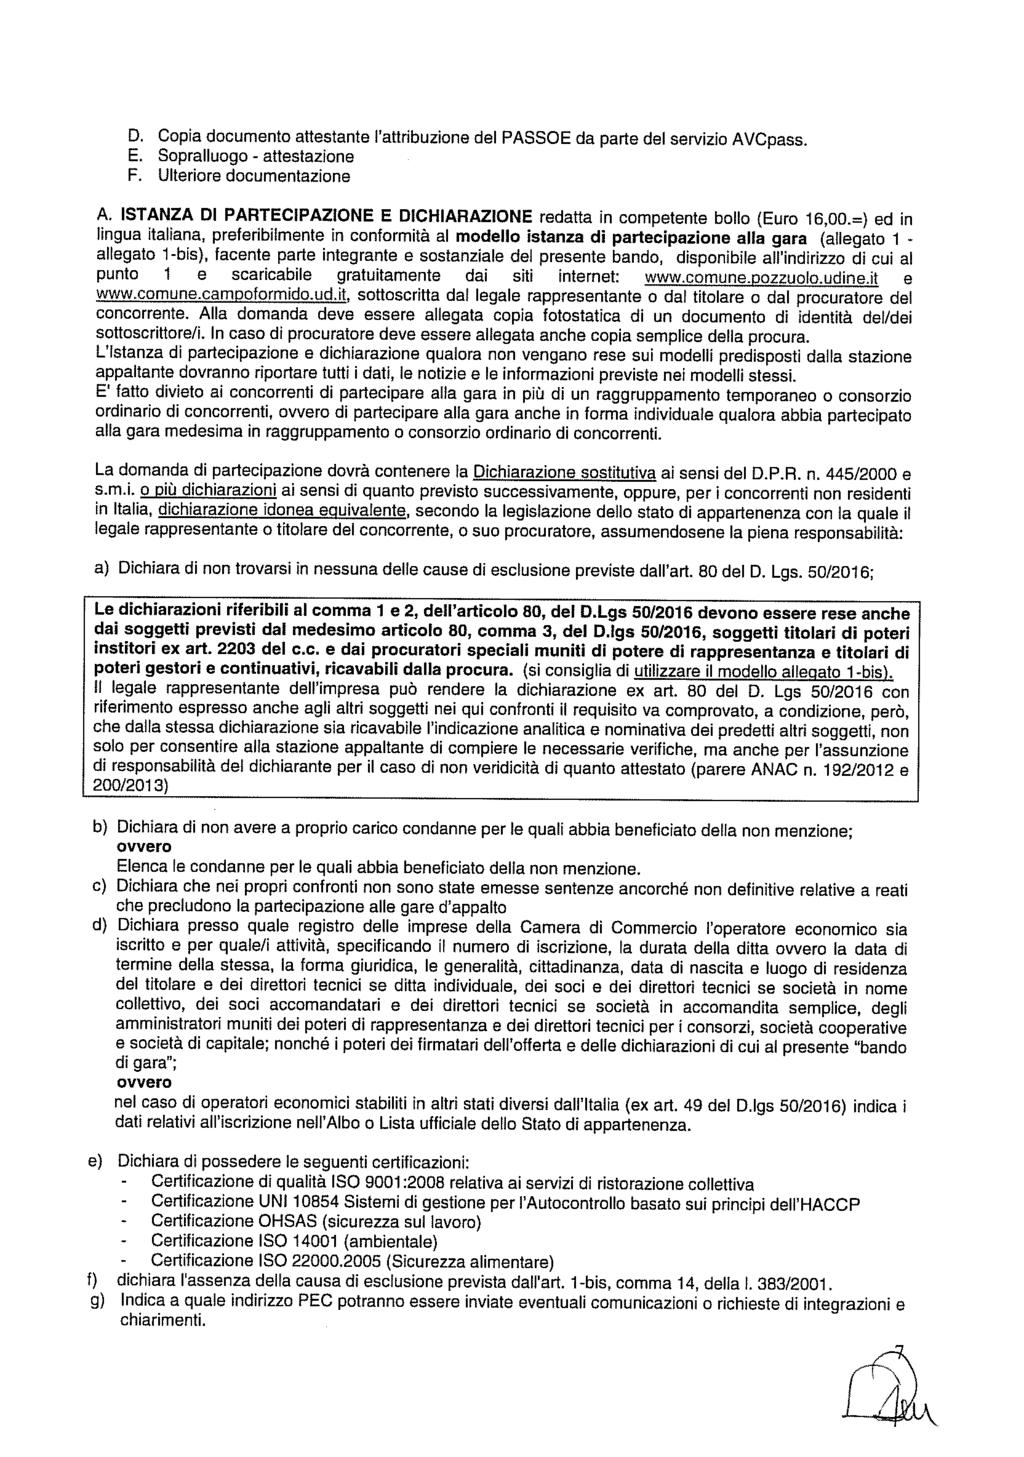 D. Copa documento attestante attrbuzone del PASSOE da parte del servzo AVCpass. E. Sopralluogo attestazone E. Ulterore documentazone A.